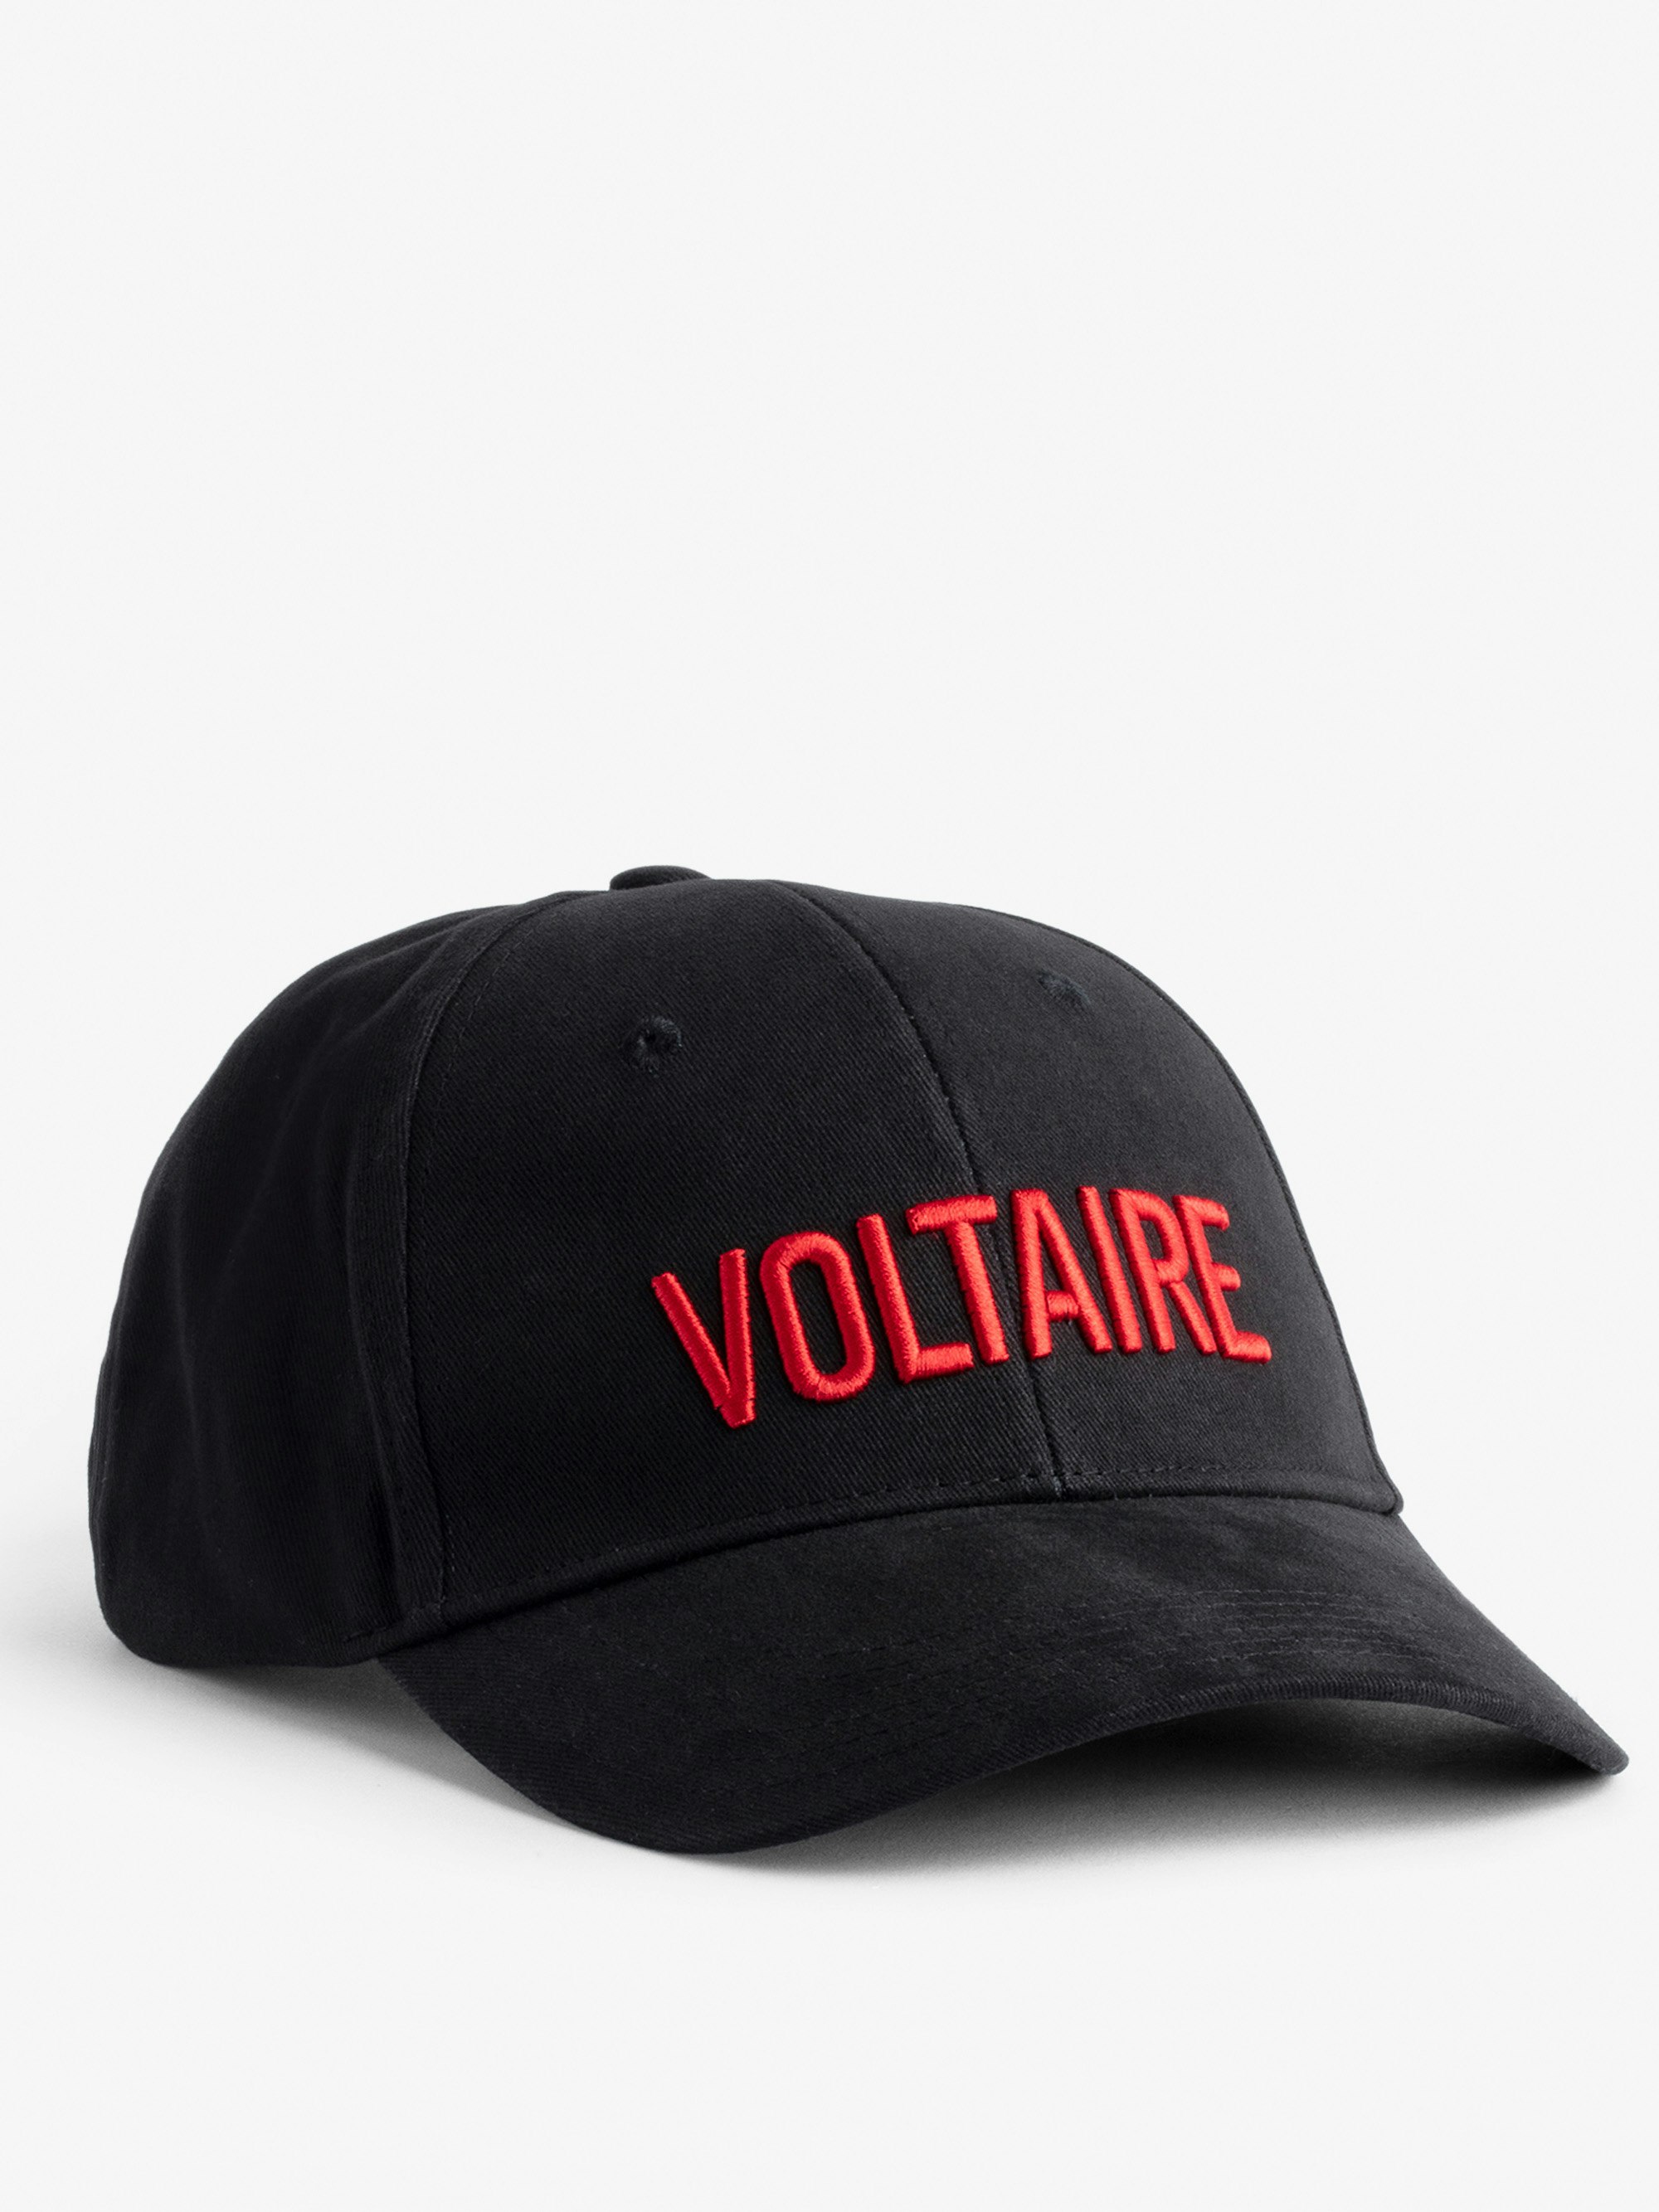 Klelia Voltaire Cap - Women's Voltaire embroidered black cotton cap.